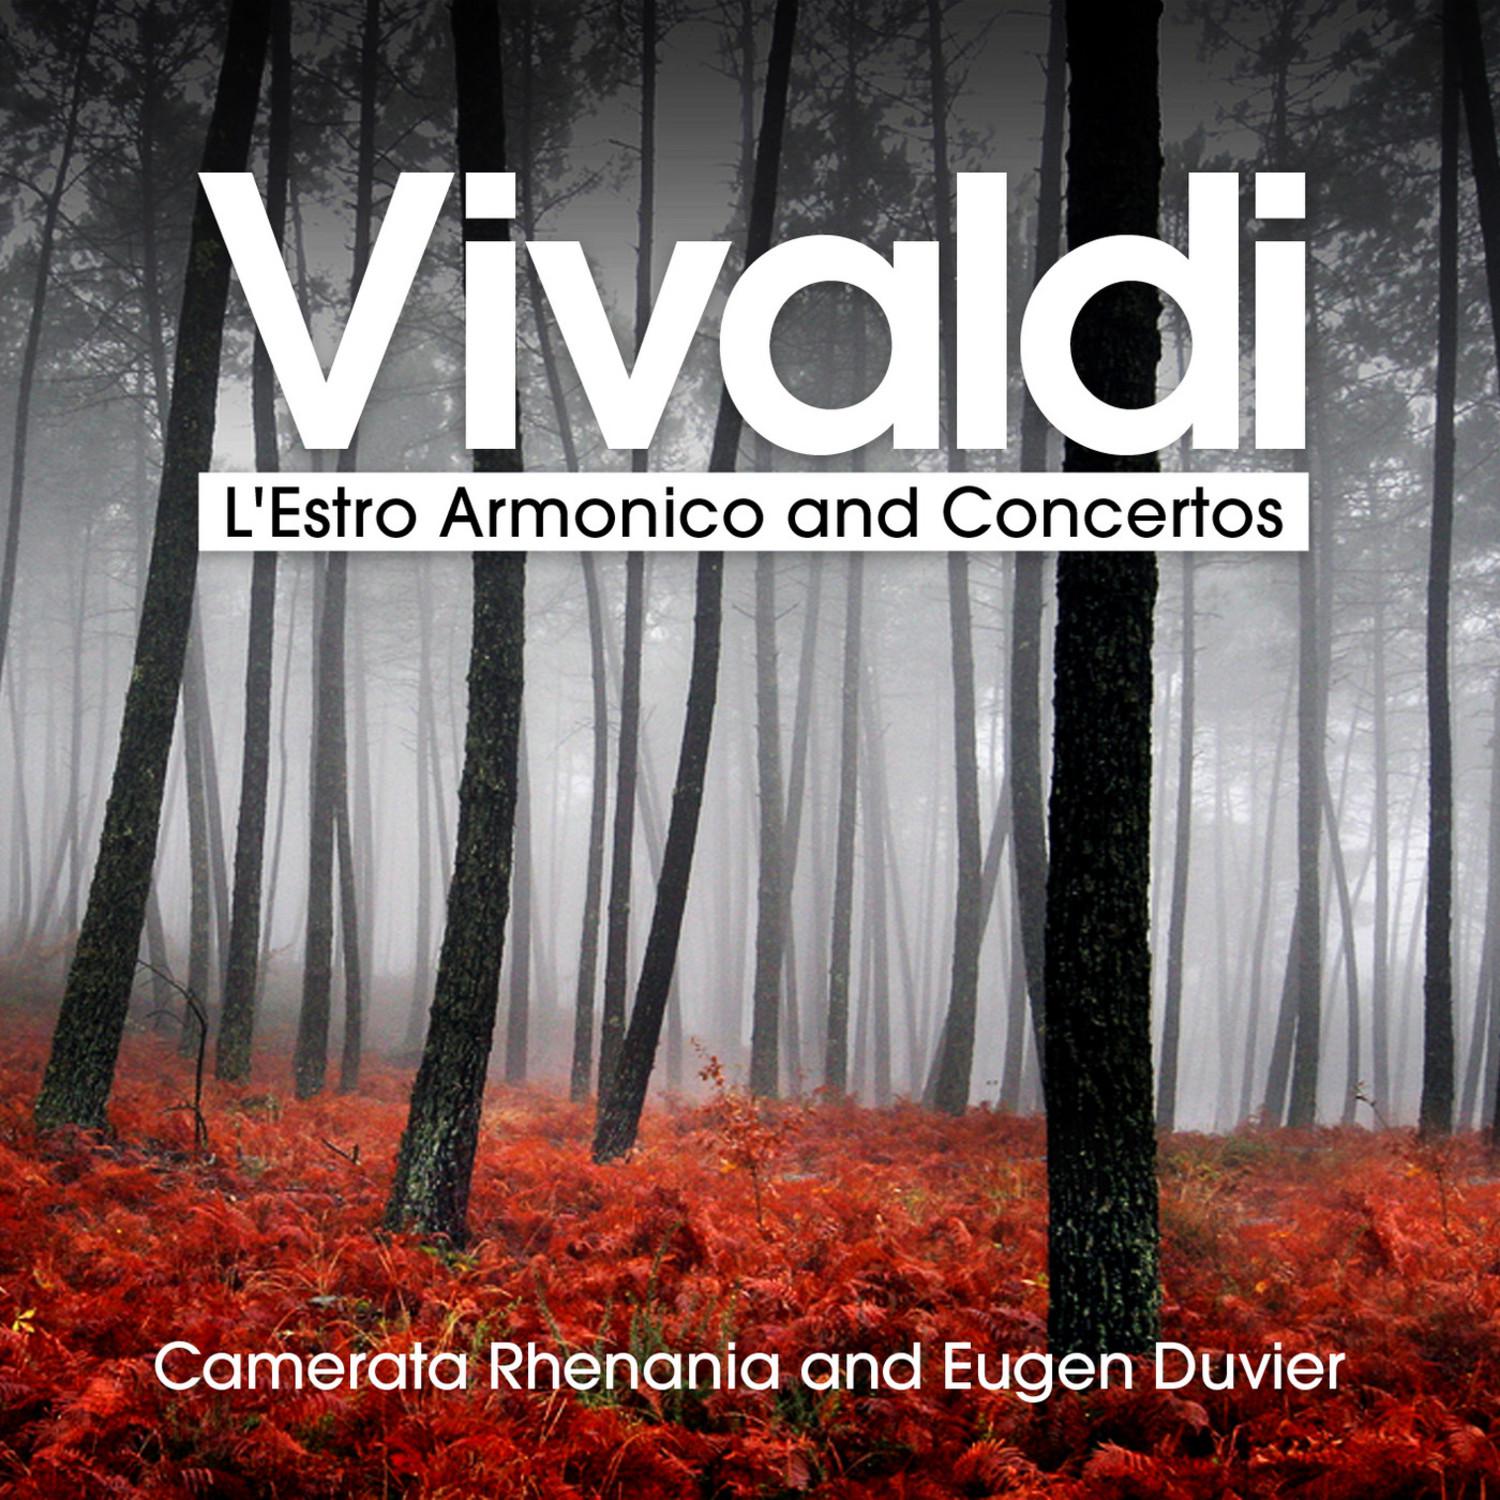 L'Estro Armonico, Op. 3 - Concerto No. 8 in A Minor for 2 Violins and Strings, RV 522: III. Allegro